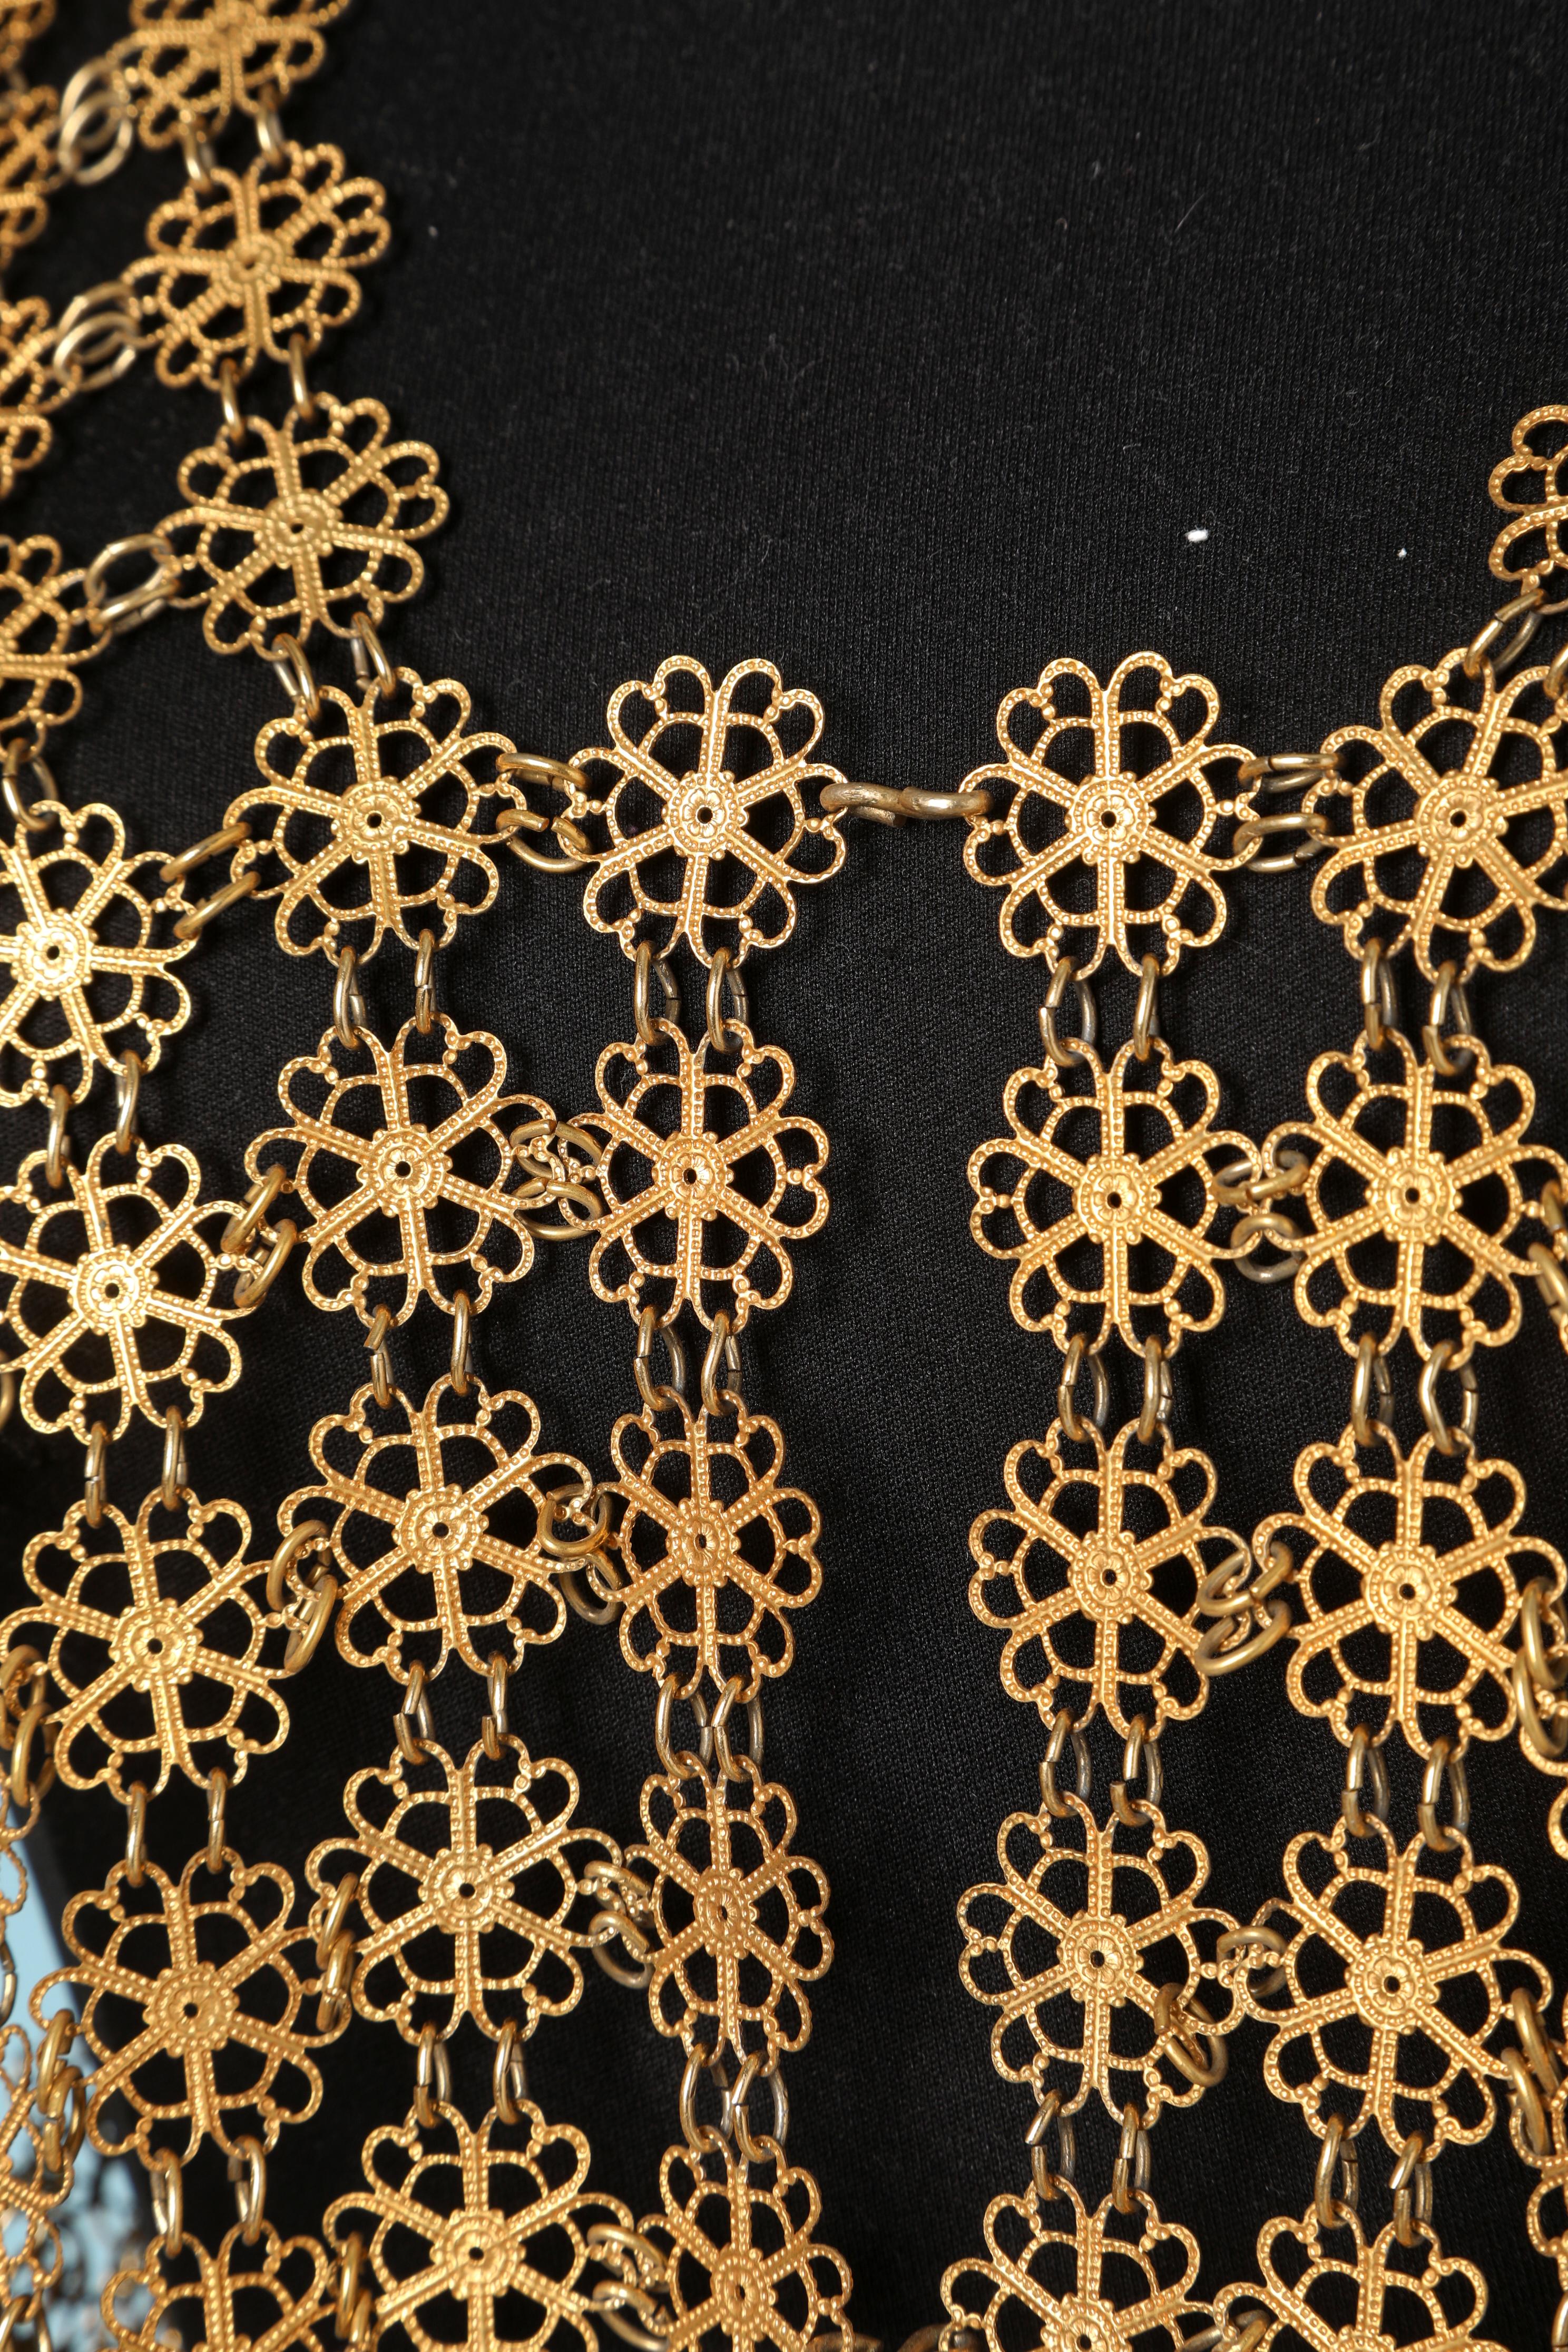 1970's Gold metallic vest in flowers pattern.
Size L